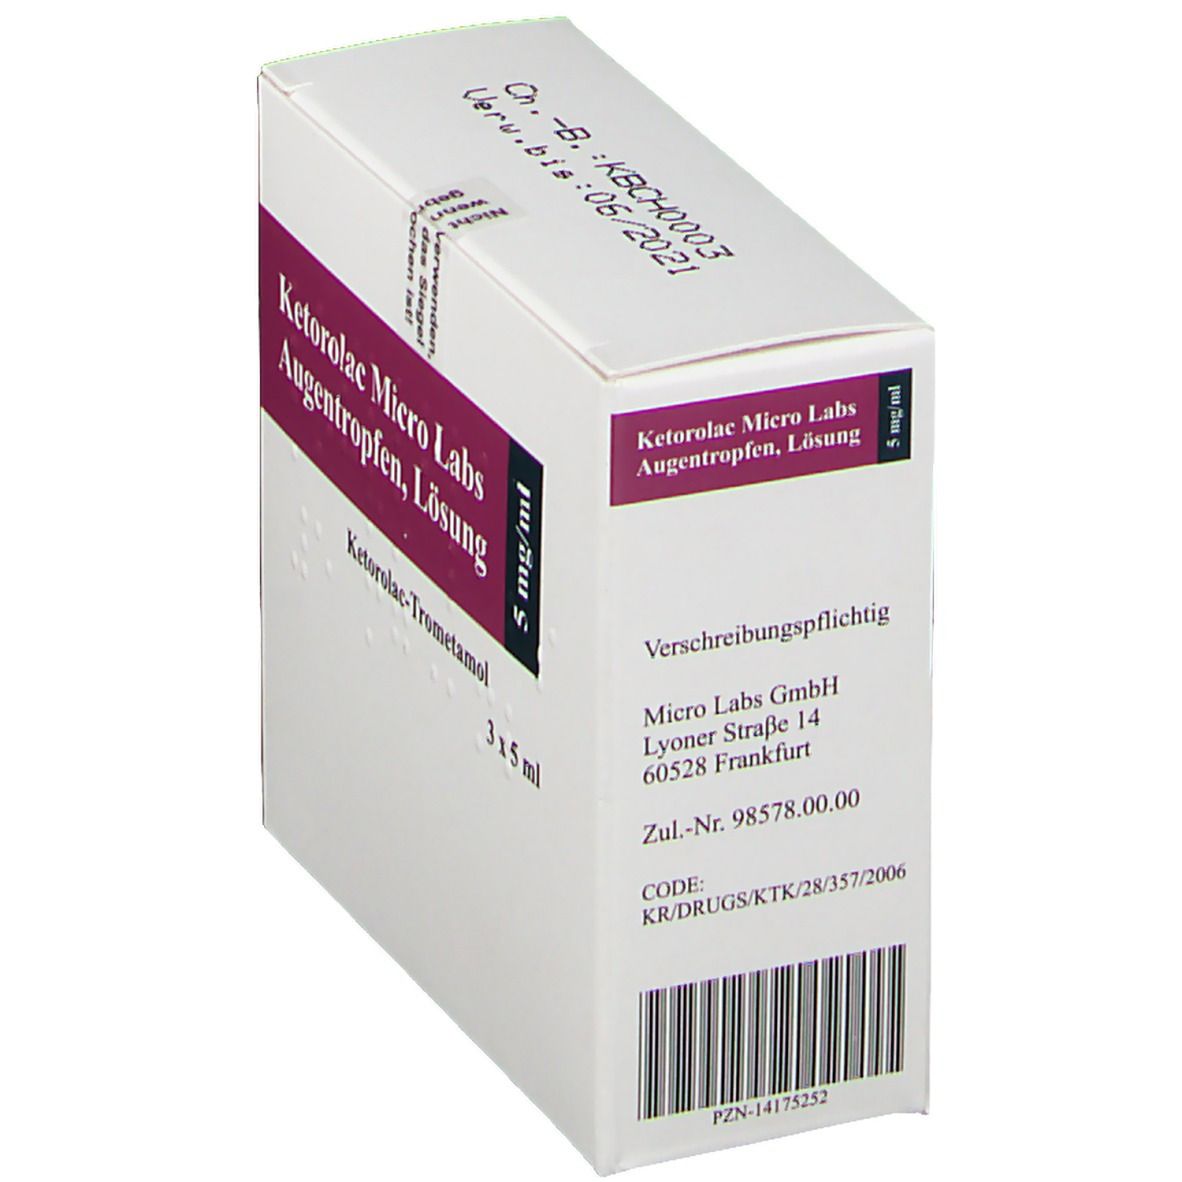 Ketorolac Micro Labs 5 mg/ml